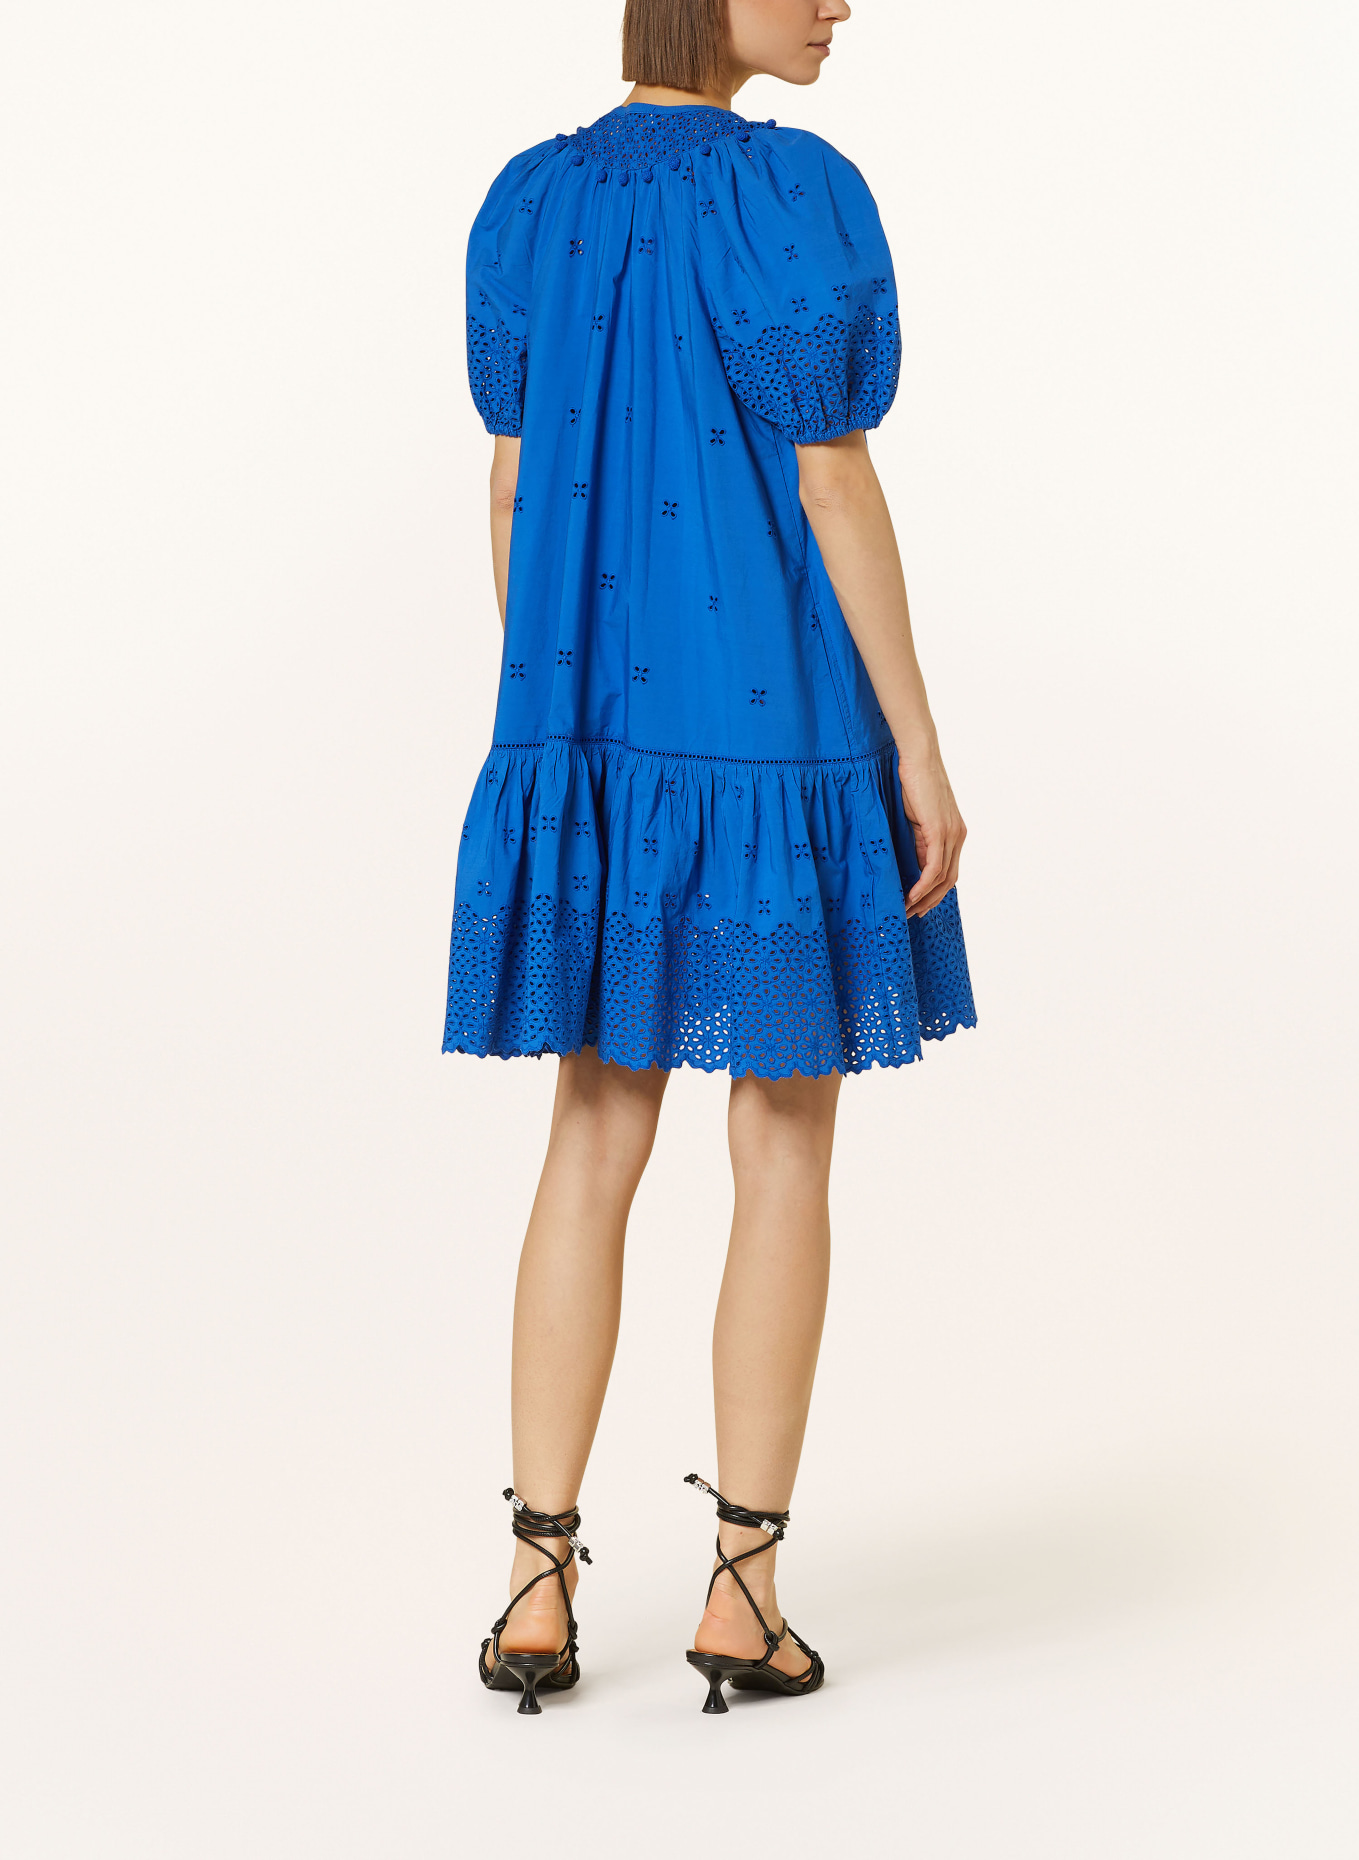 ULLA JOHNSON Kleid AURORA mit Spitze, Farbe: BLAU (Bild 3)